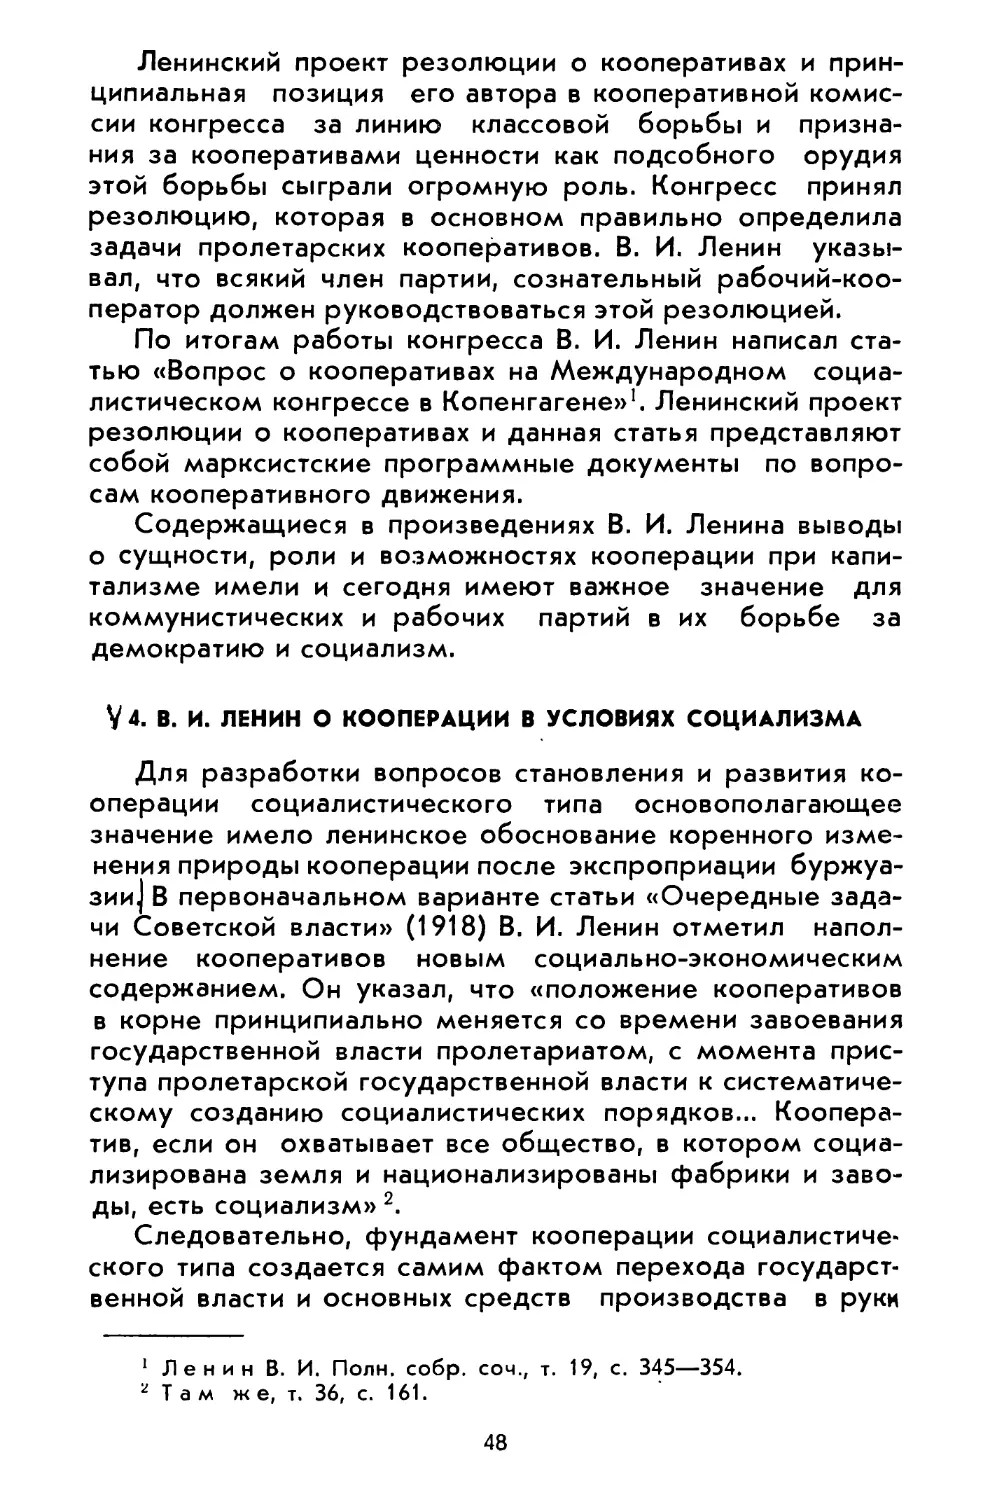 4. В. И. Ленин о кооперации в условиях социализма